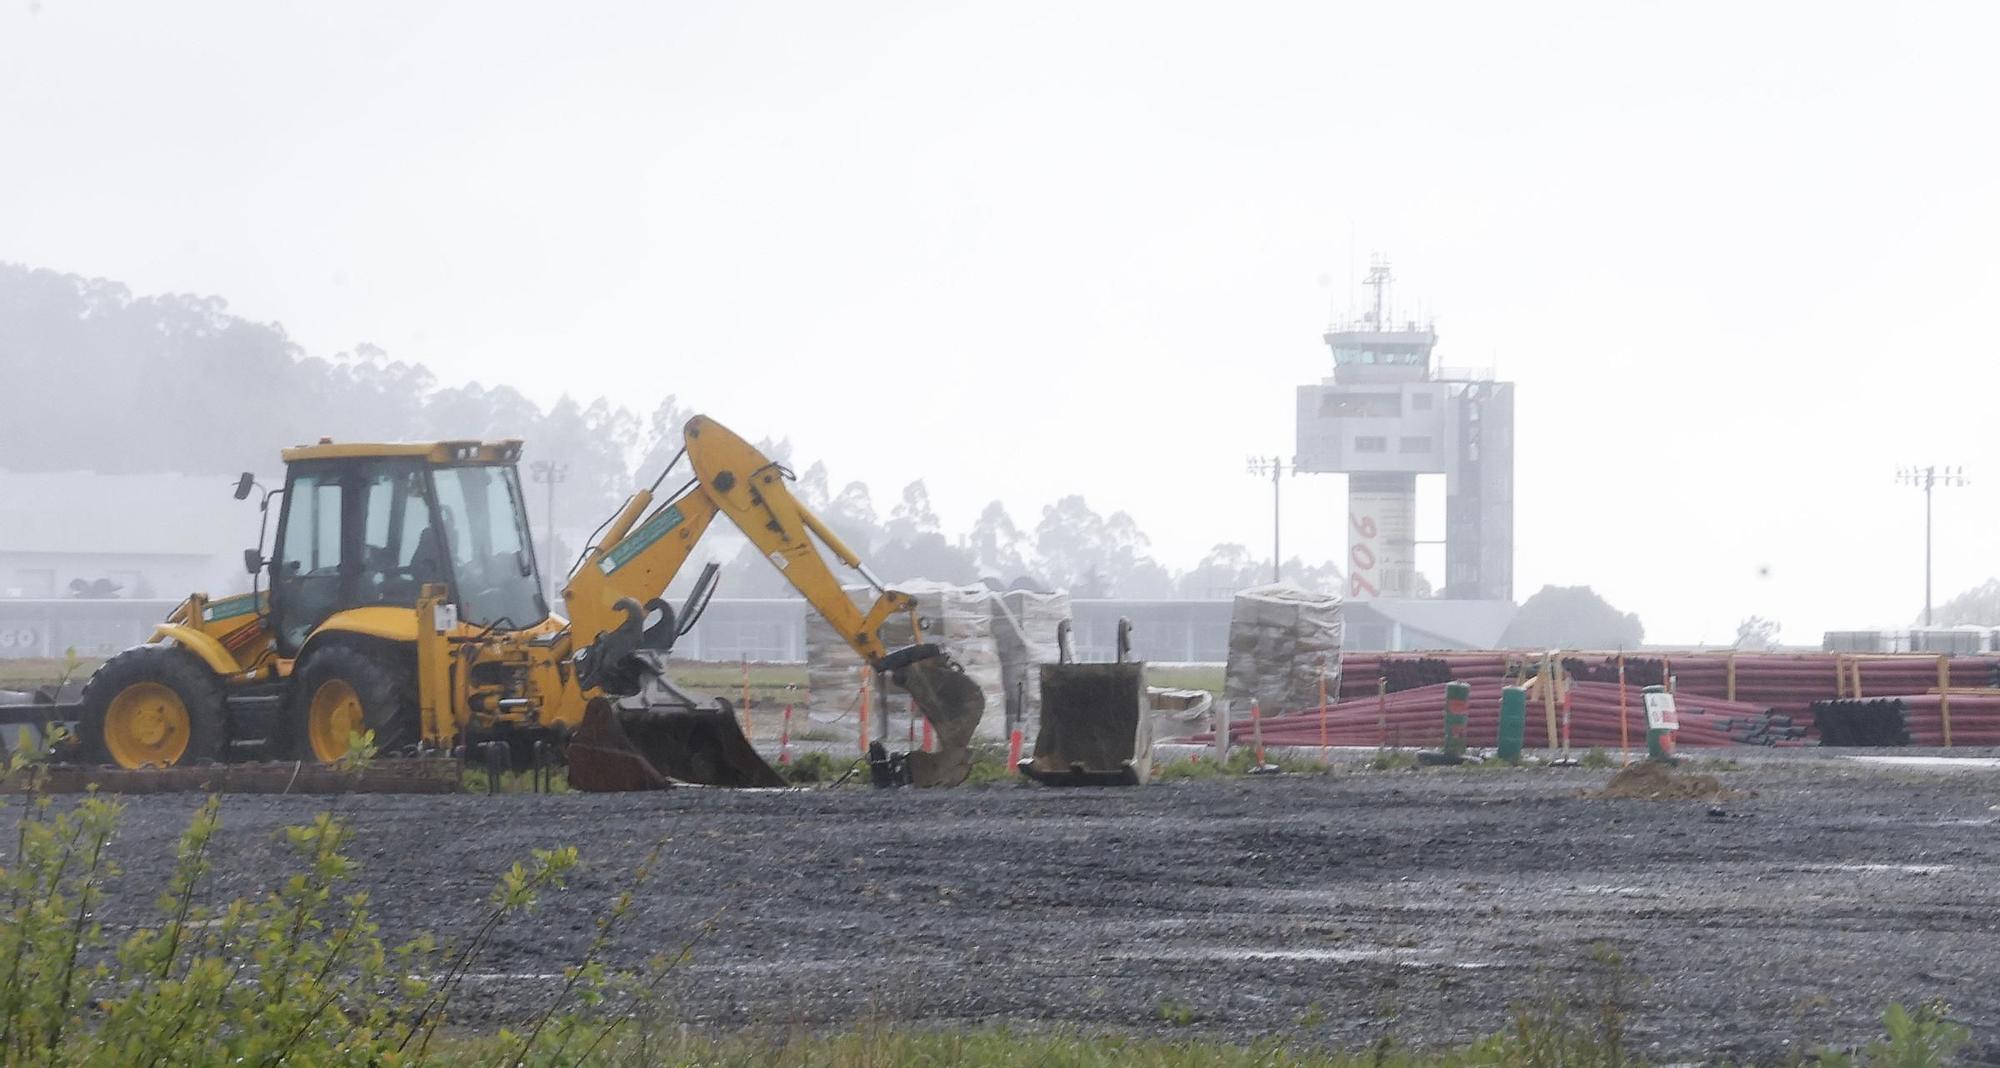 El aeropuerto de Vigo inicia las obras de reforma en su pista